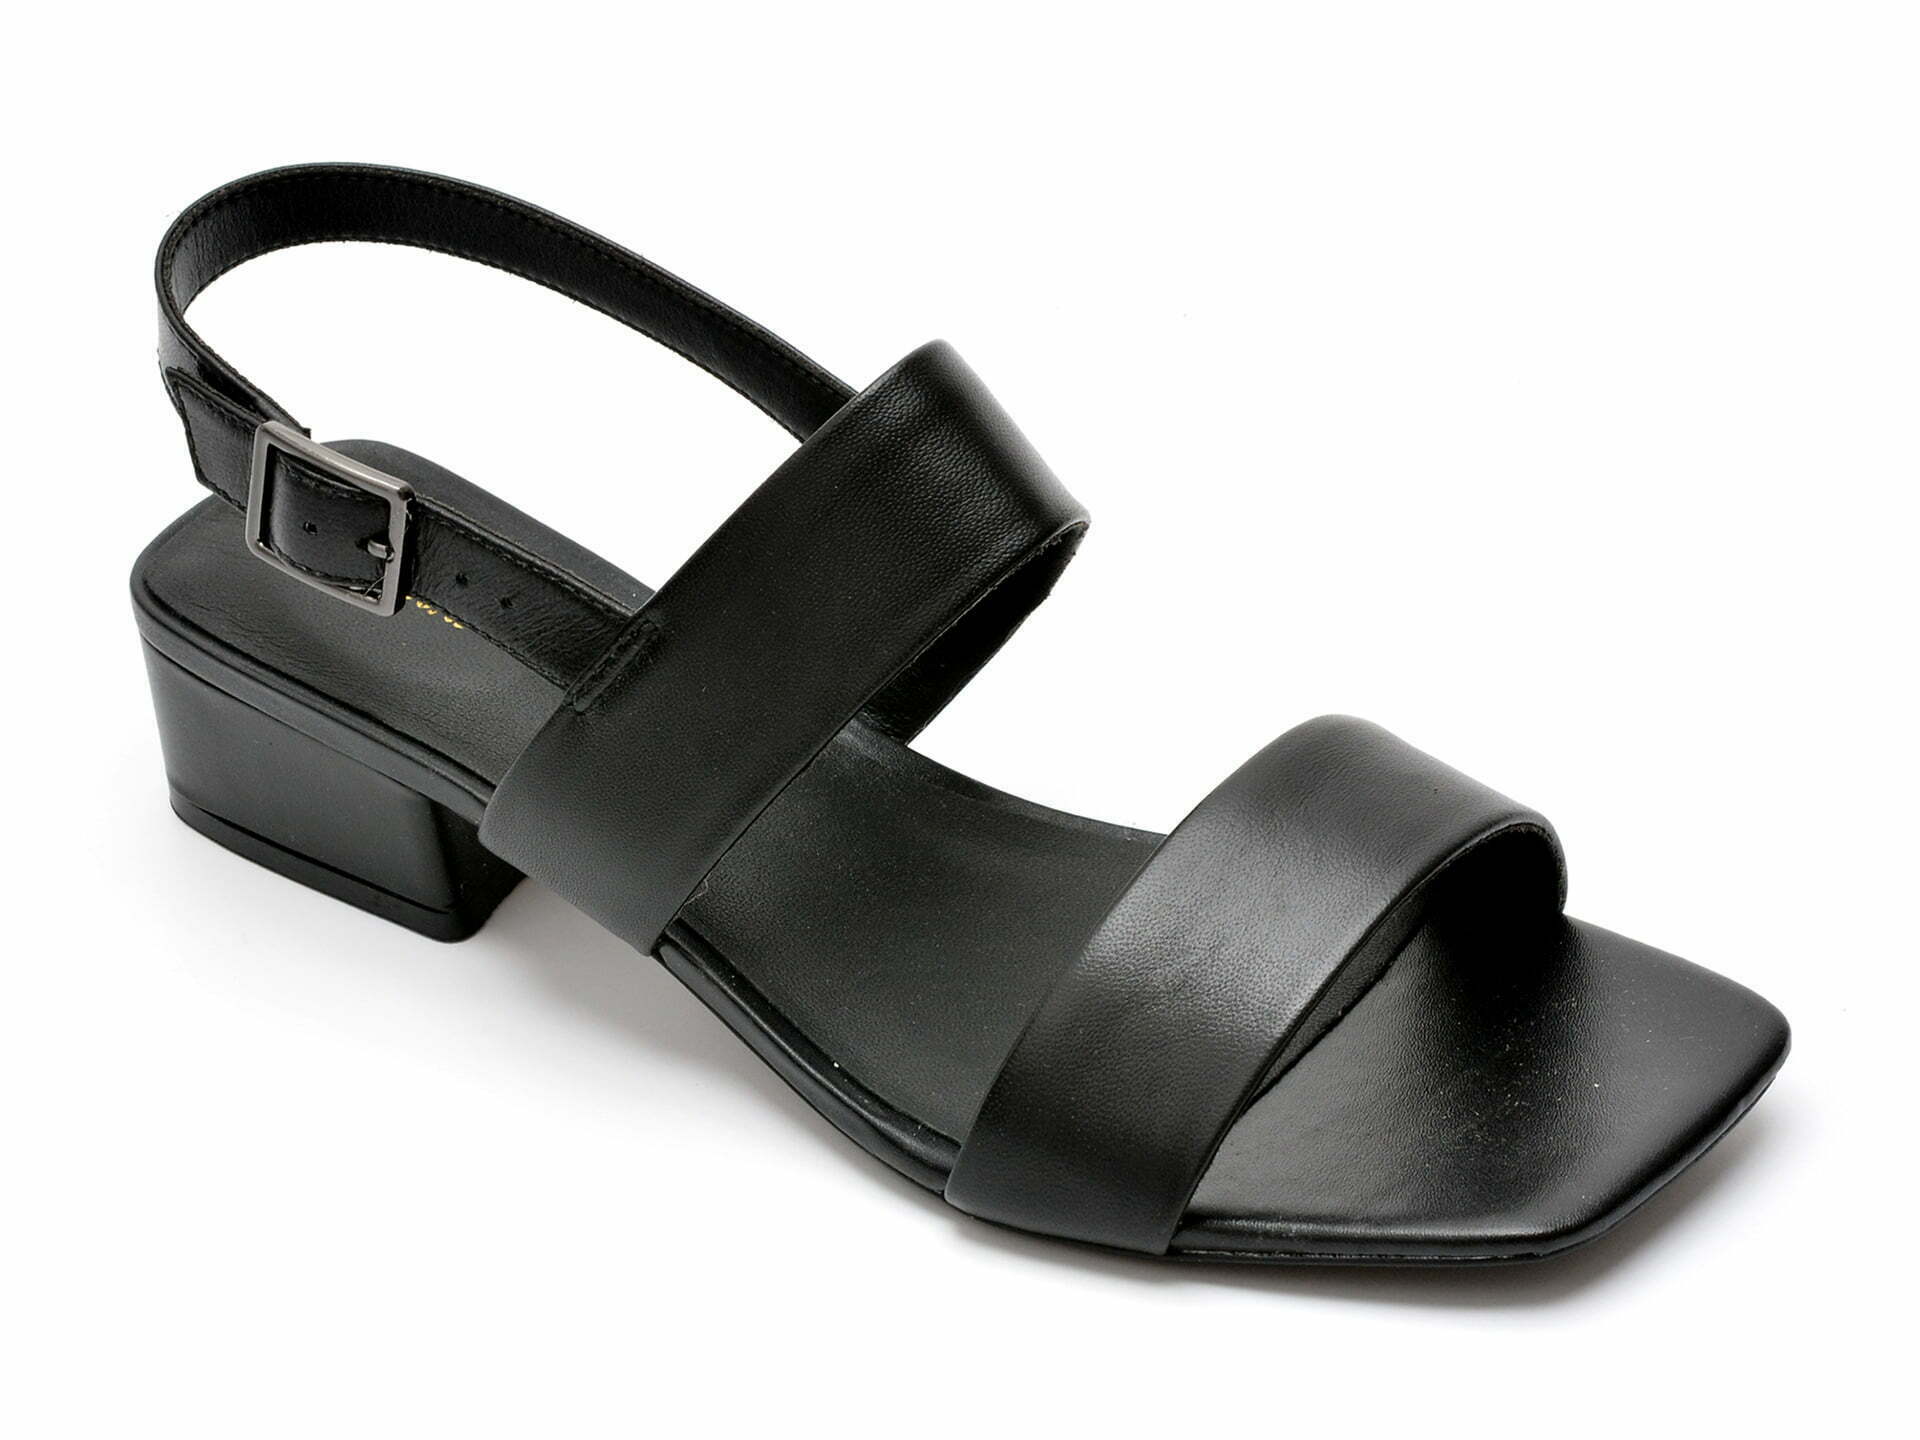 Comandă Încălțăminte Damă, la Reducere  Sandale CLARKS negre, SER25ST, din piele naturala Branduri de top ✓